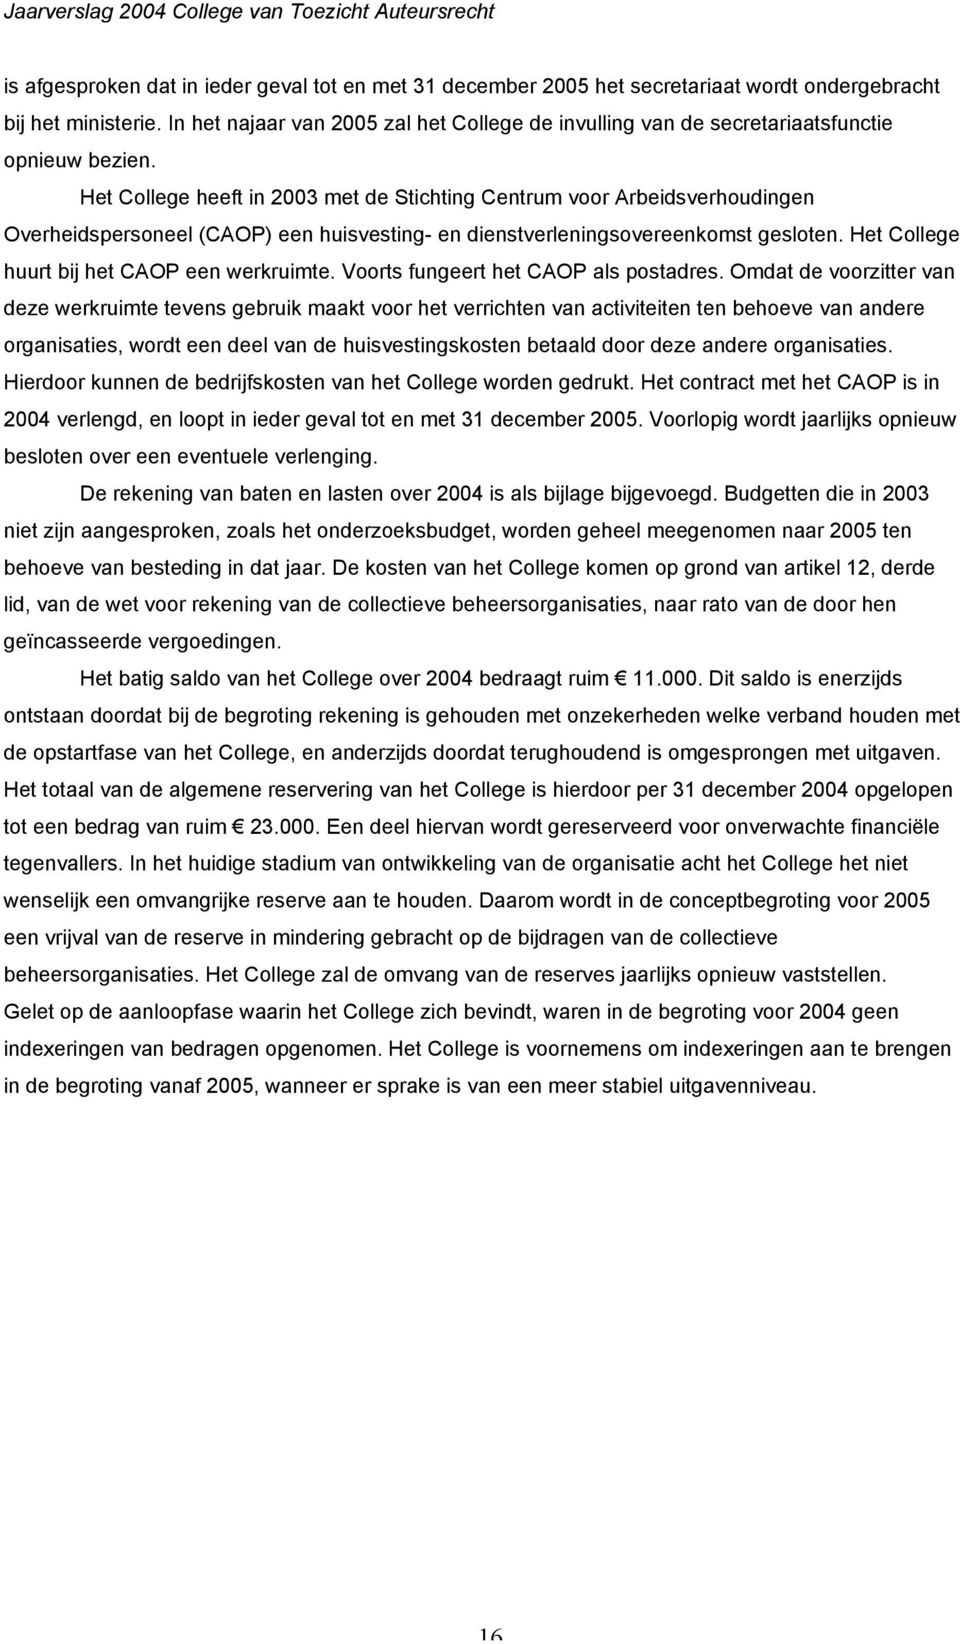 Het College heeft in 2003 met de Stichting Centrum voor Arbeidsverhoudingen Overheidspersoneel (CAOP) een huisvesting- en dienstverleningsovereenkomst gesloten.